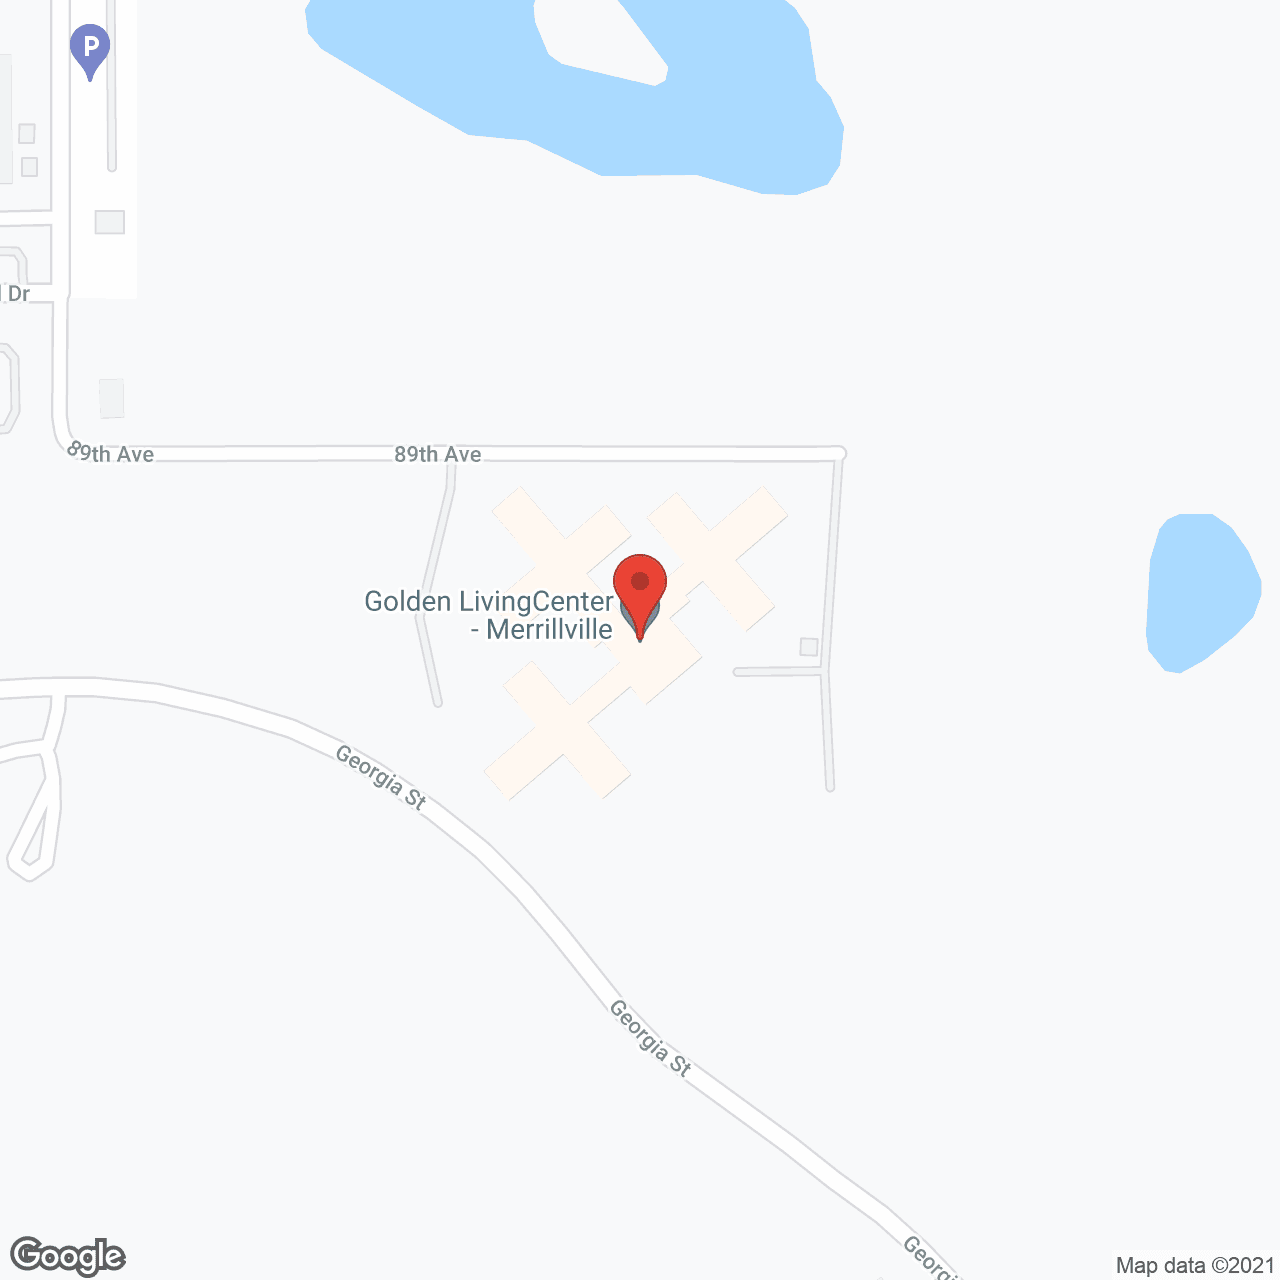 Golden LivingCenter - Merrillville in google map